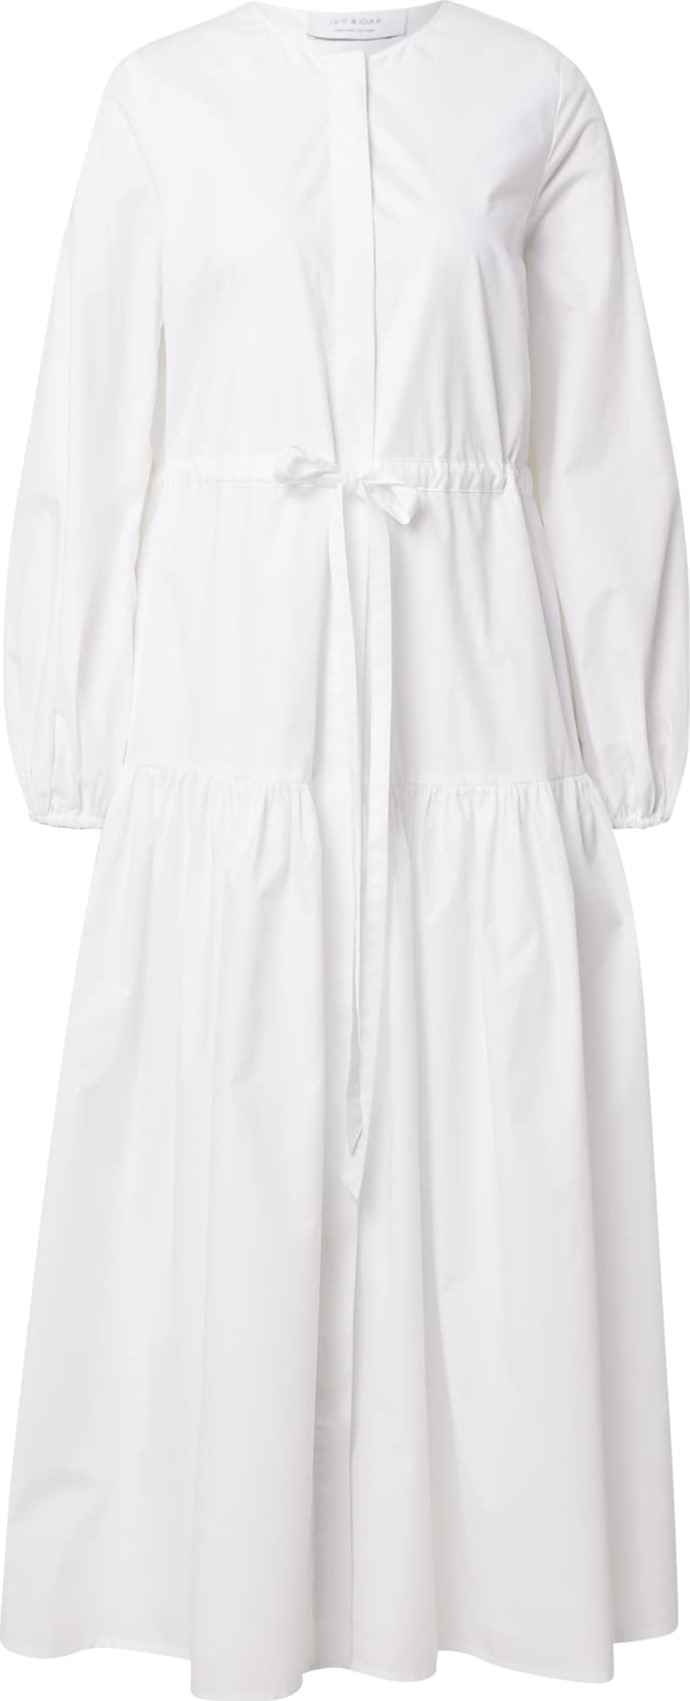 IVY & OAK Košilové šaty bílá